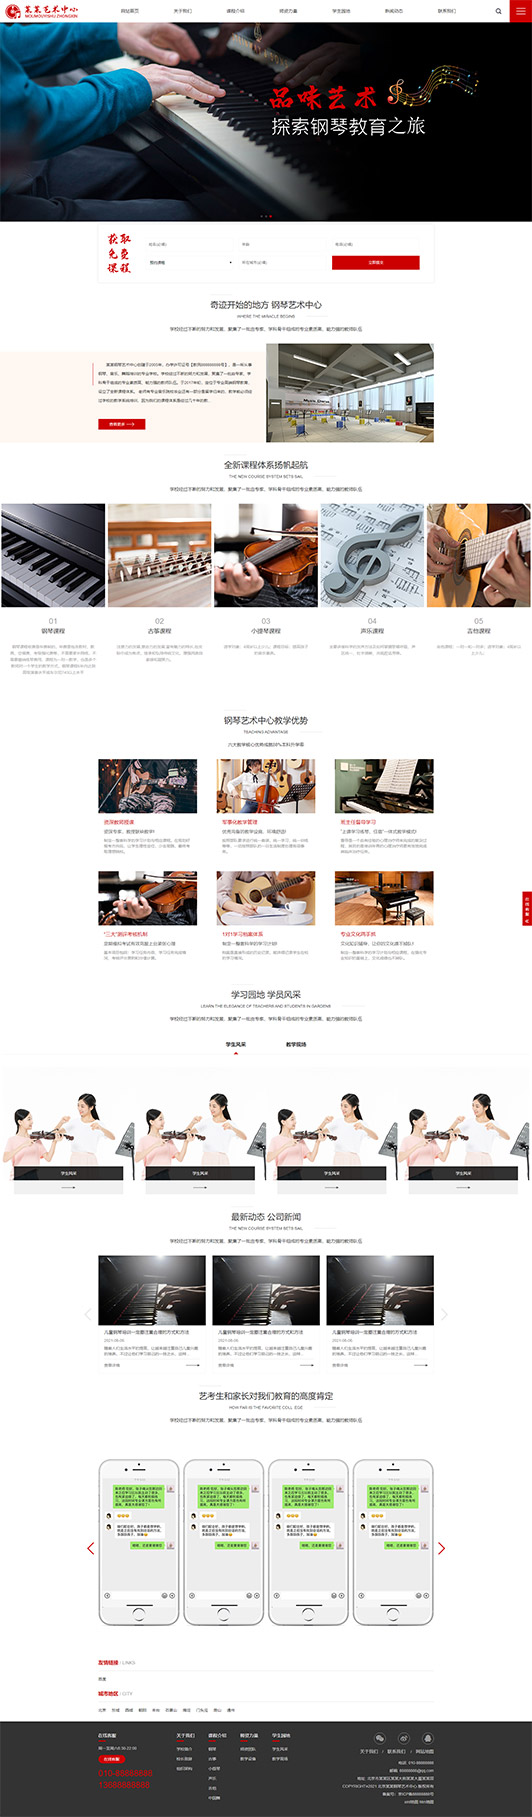 文山钢琴艺术培训公司响应式企业网站